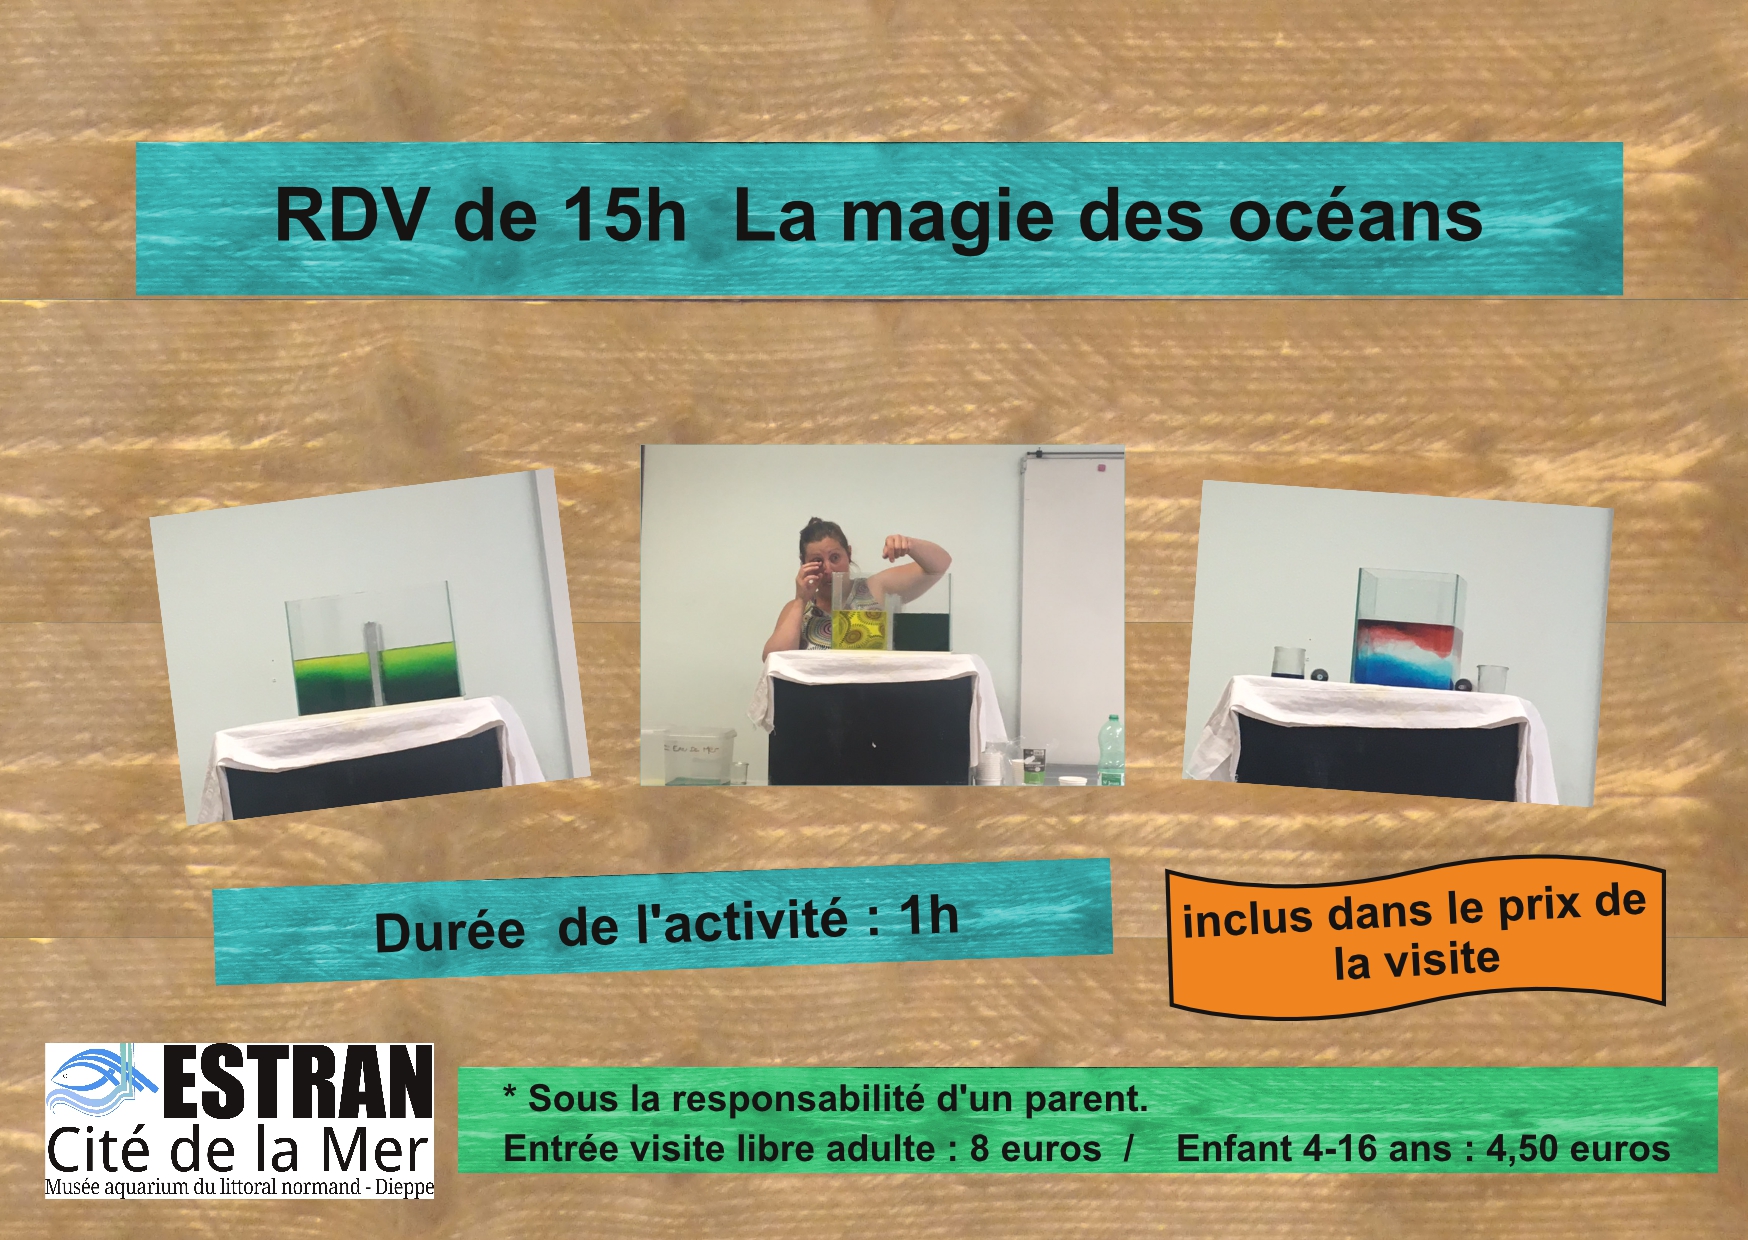 Les Petits Rendez-Vous de 15h "La magie des océans" @ ESTRAN - Cité de la Mer | Dieppe | Normandie | France